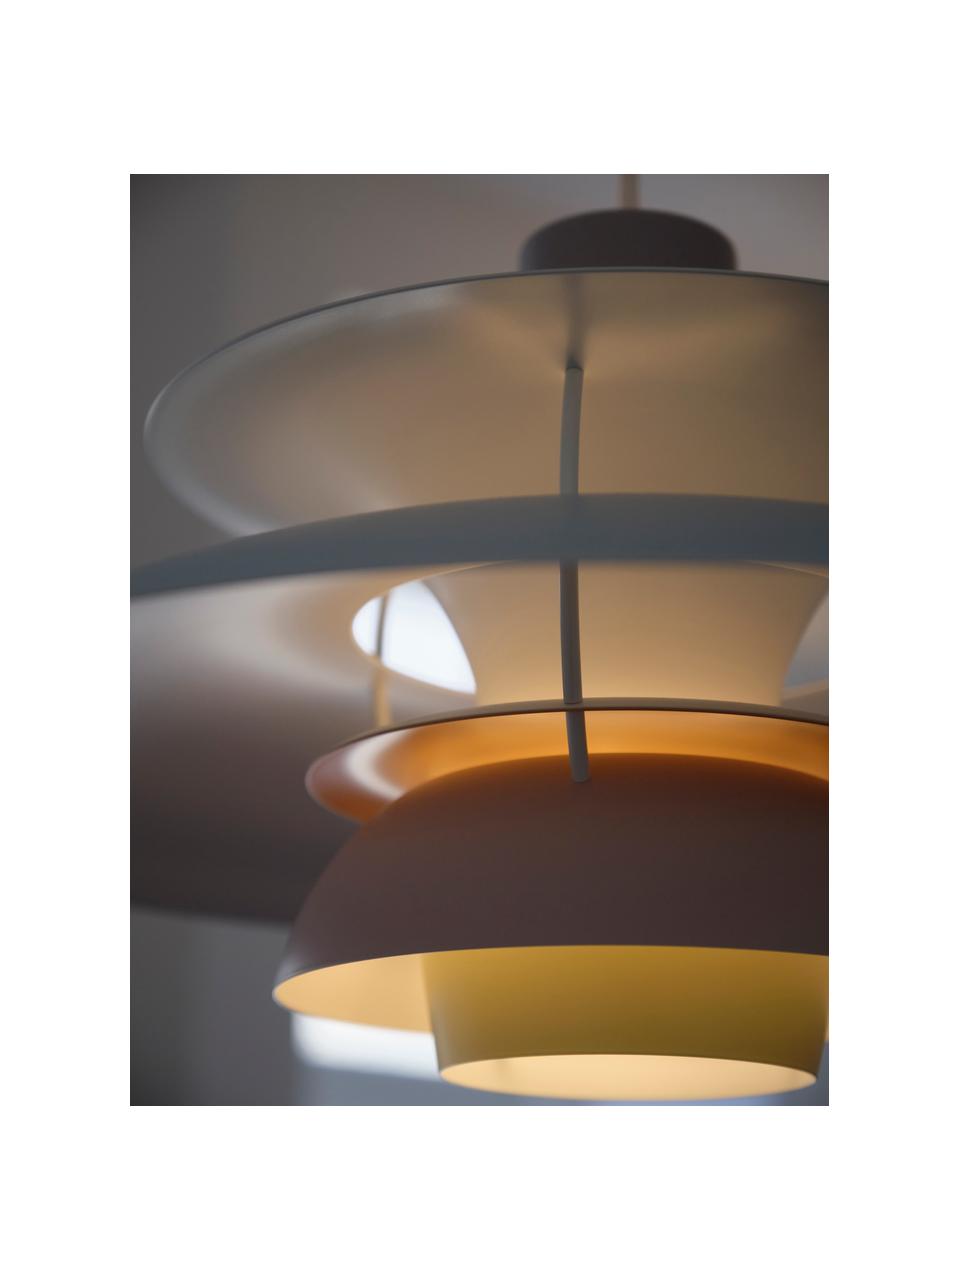 Lámpara de techo PH 5, Cable: cubierto en tela, Azul claro, rosa claro, melocotón, amarillo claro, Ø 50 x Al 27 cm